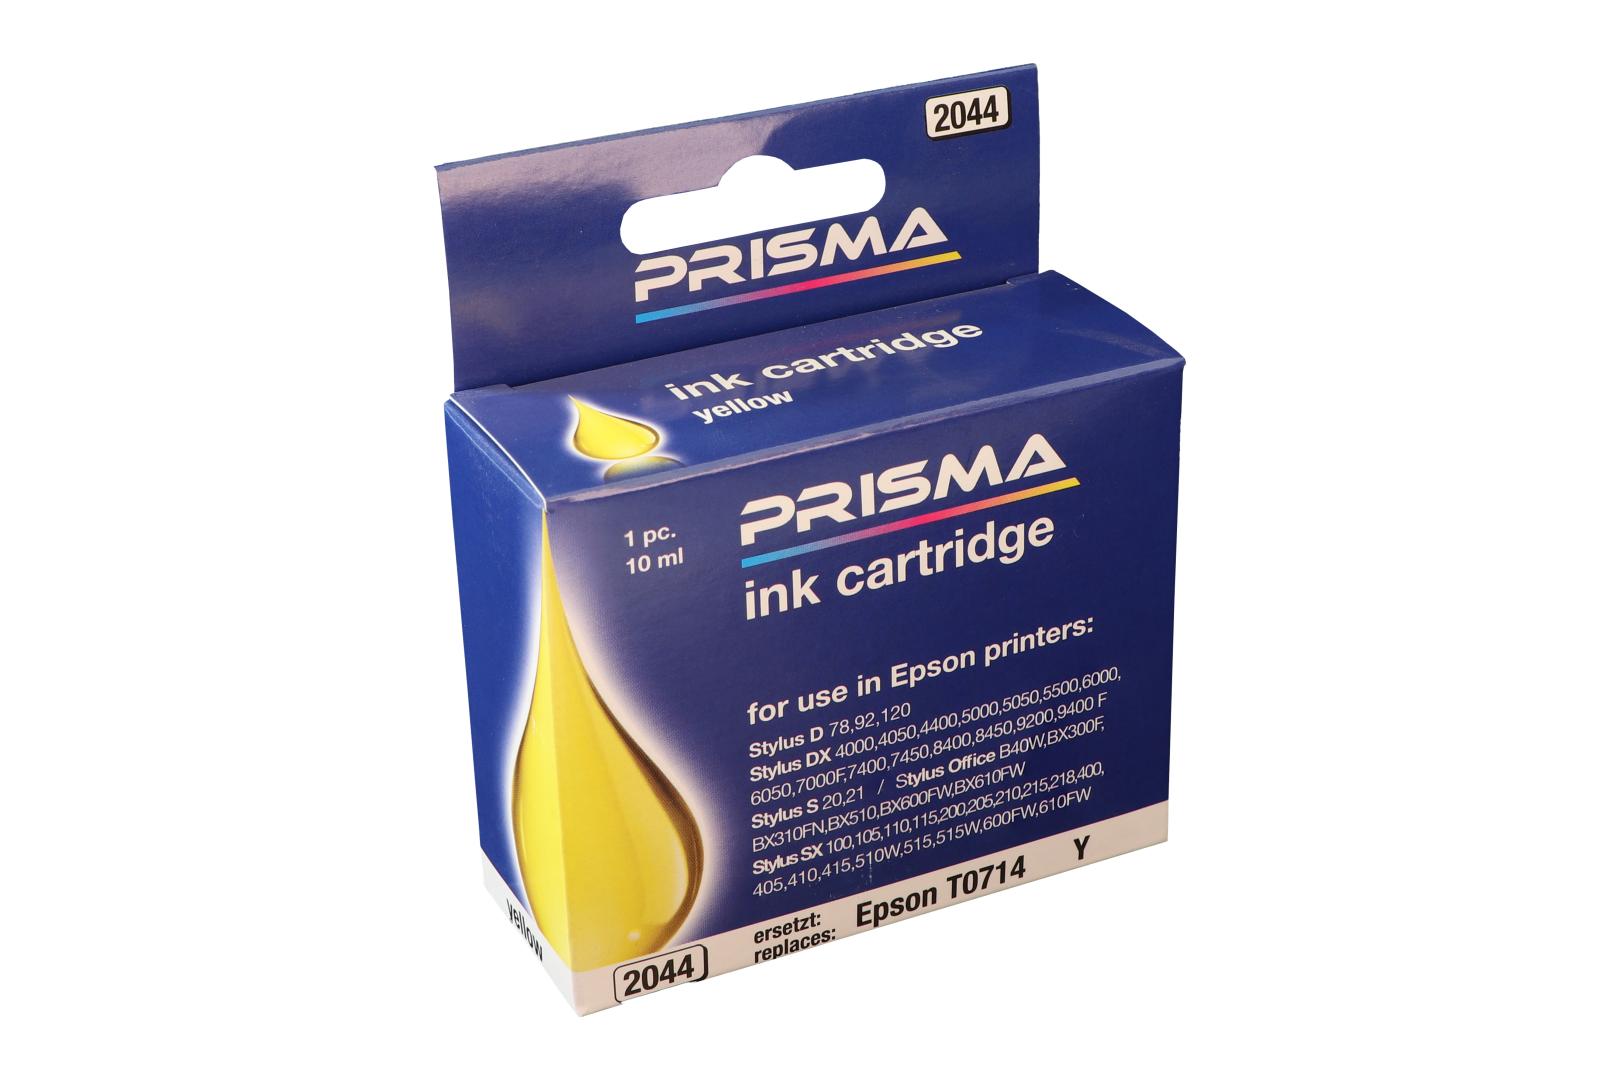 PRISMA 2044 Druckerpatrone für Epson Tintenstrahldrucker, yellow, 10 ml